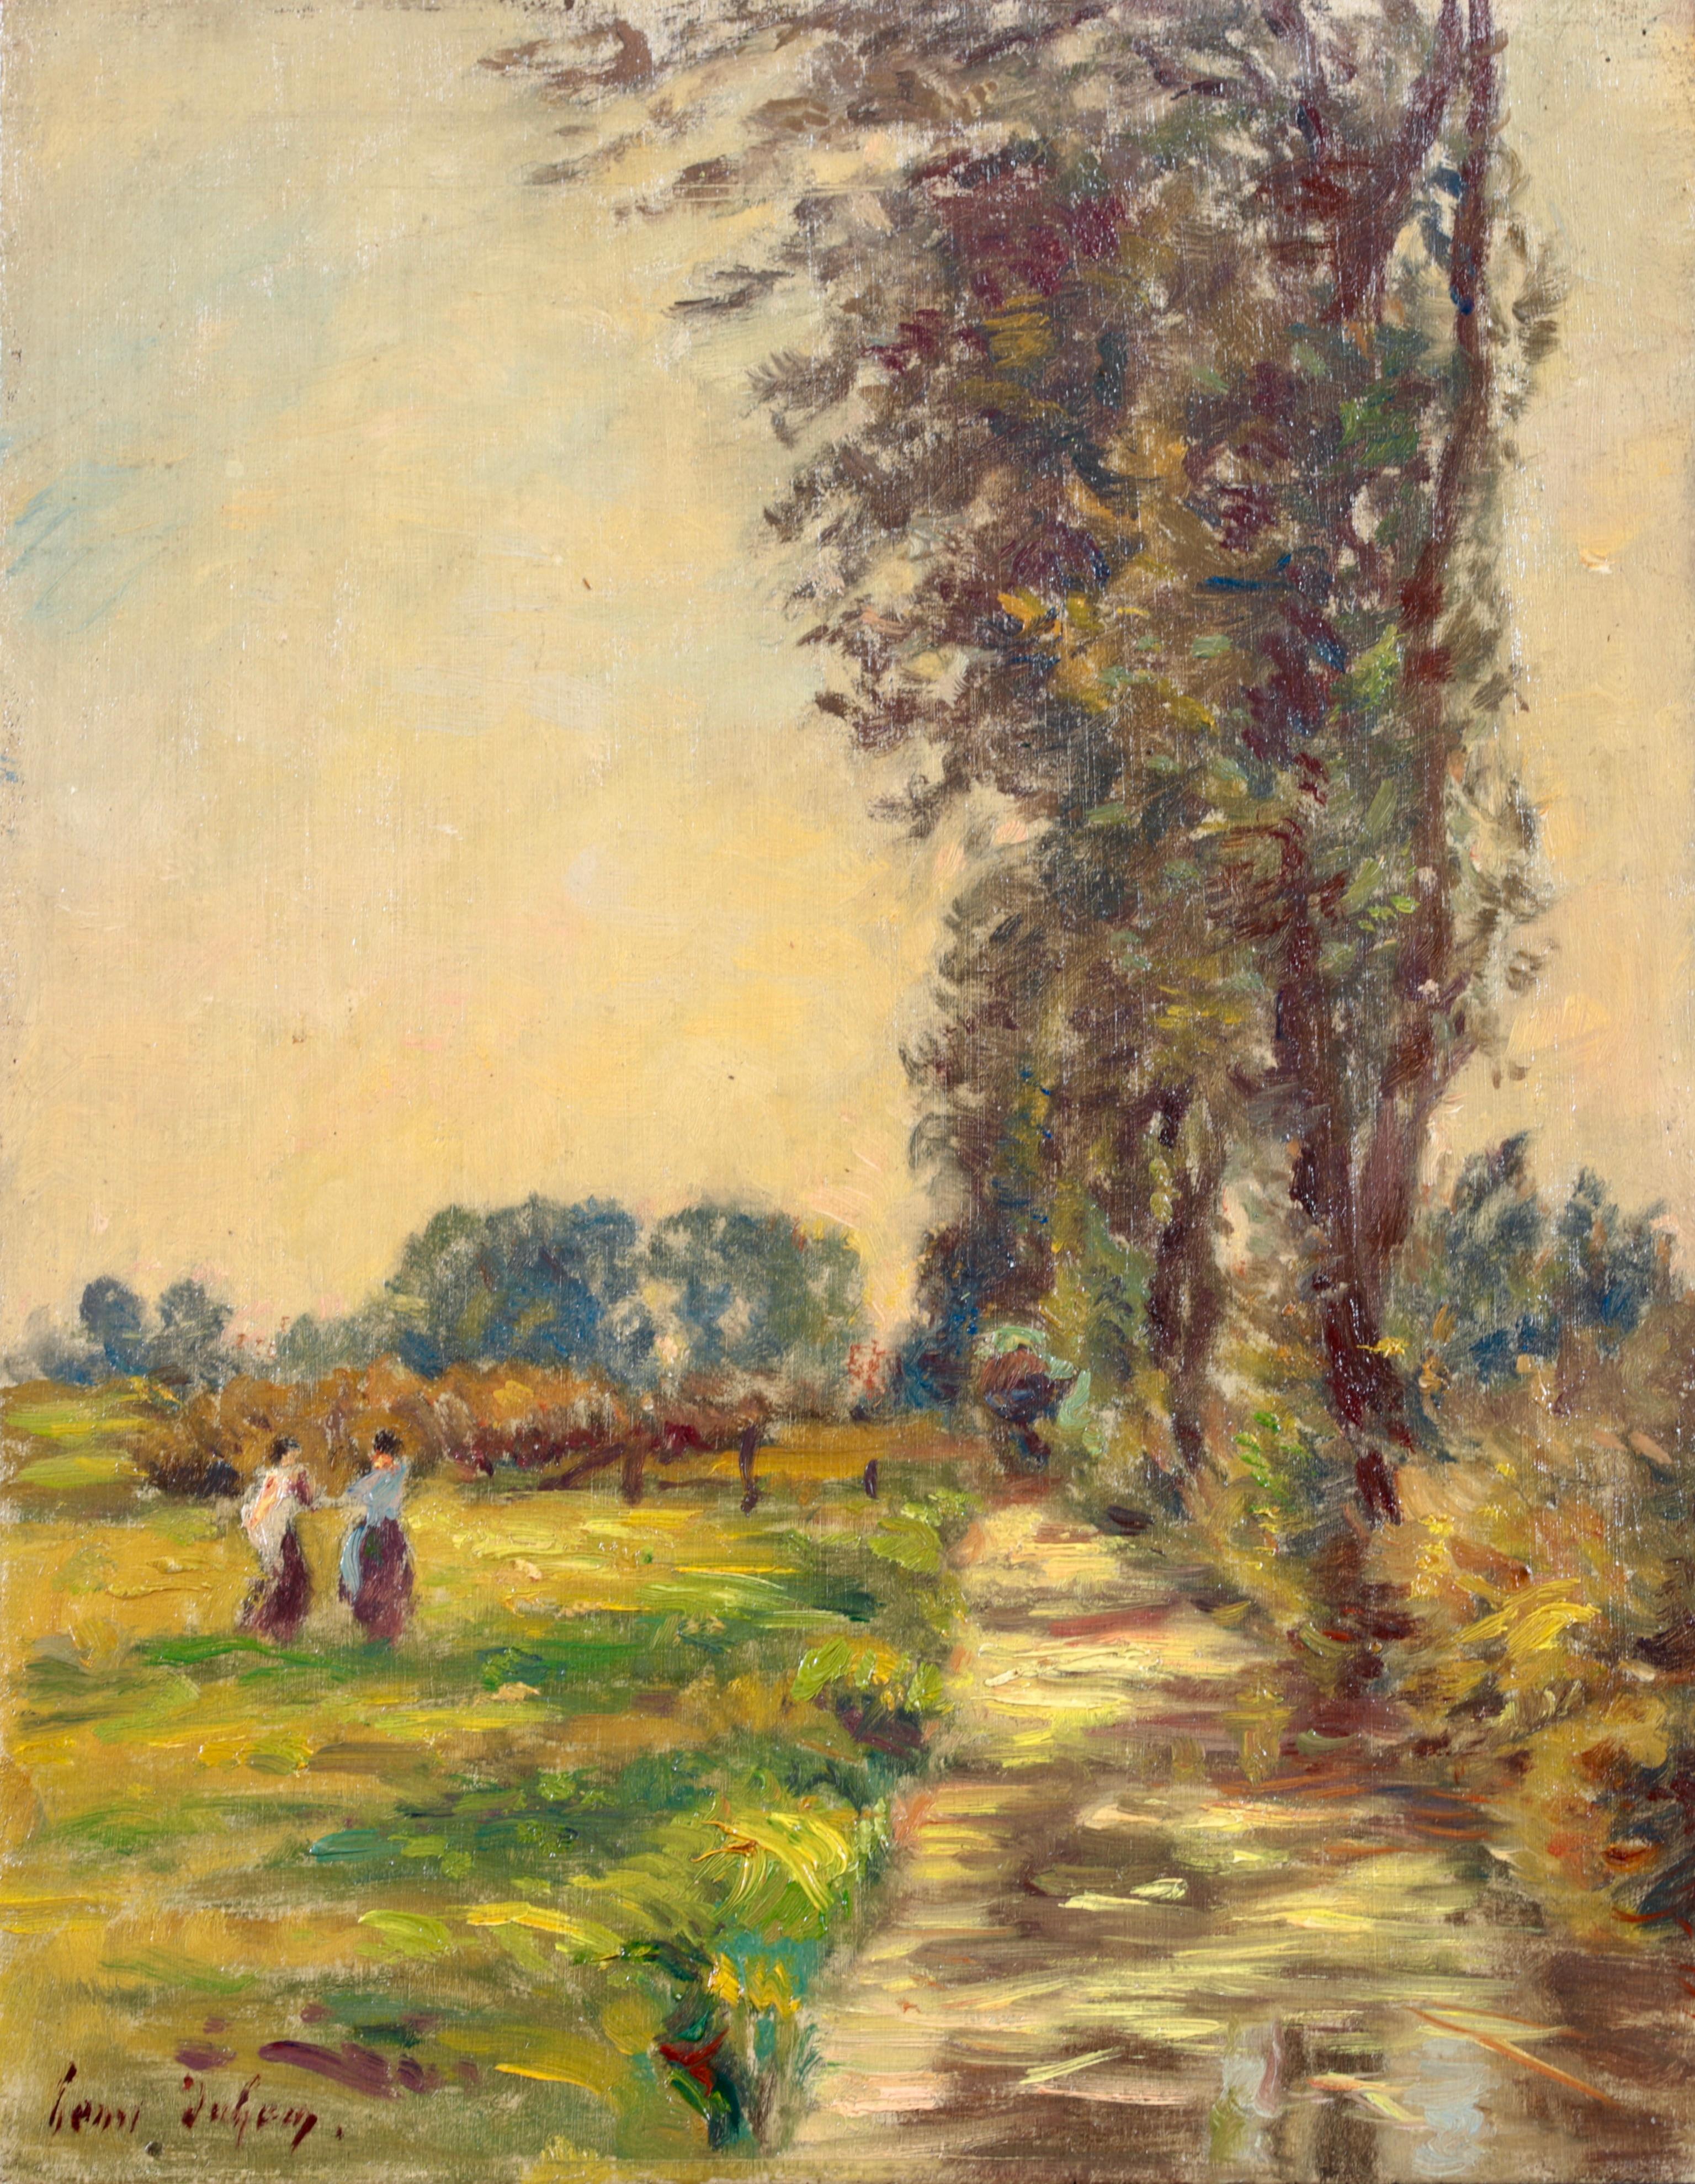 Signiert und datiert Öl auf Platte Landschaft von Französisch impressionistischen Maler Henri Duhem. Das Werk zeigt zwei Frauen, die in einer Sommerlandschaft auf einer grünen Grasbank an einem Bach spazieren gehen.

Unterschrift:
Verso signiert